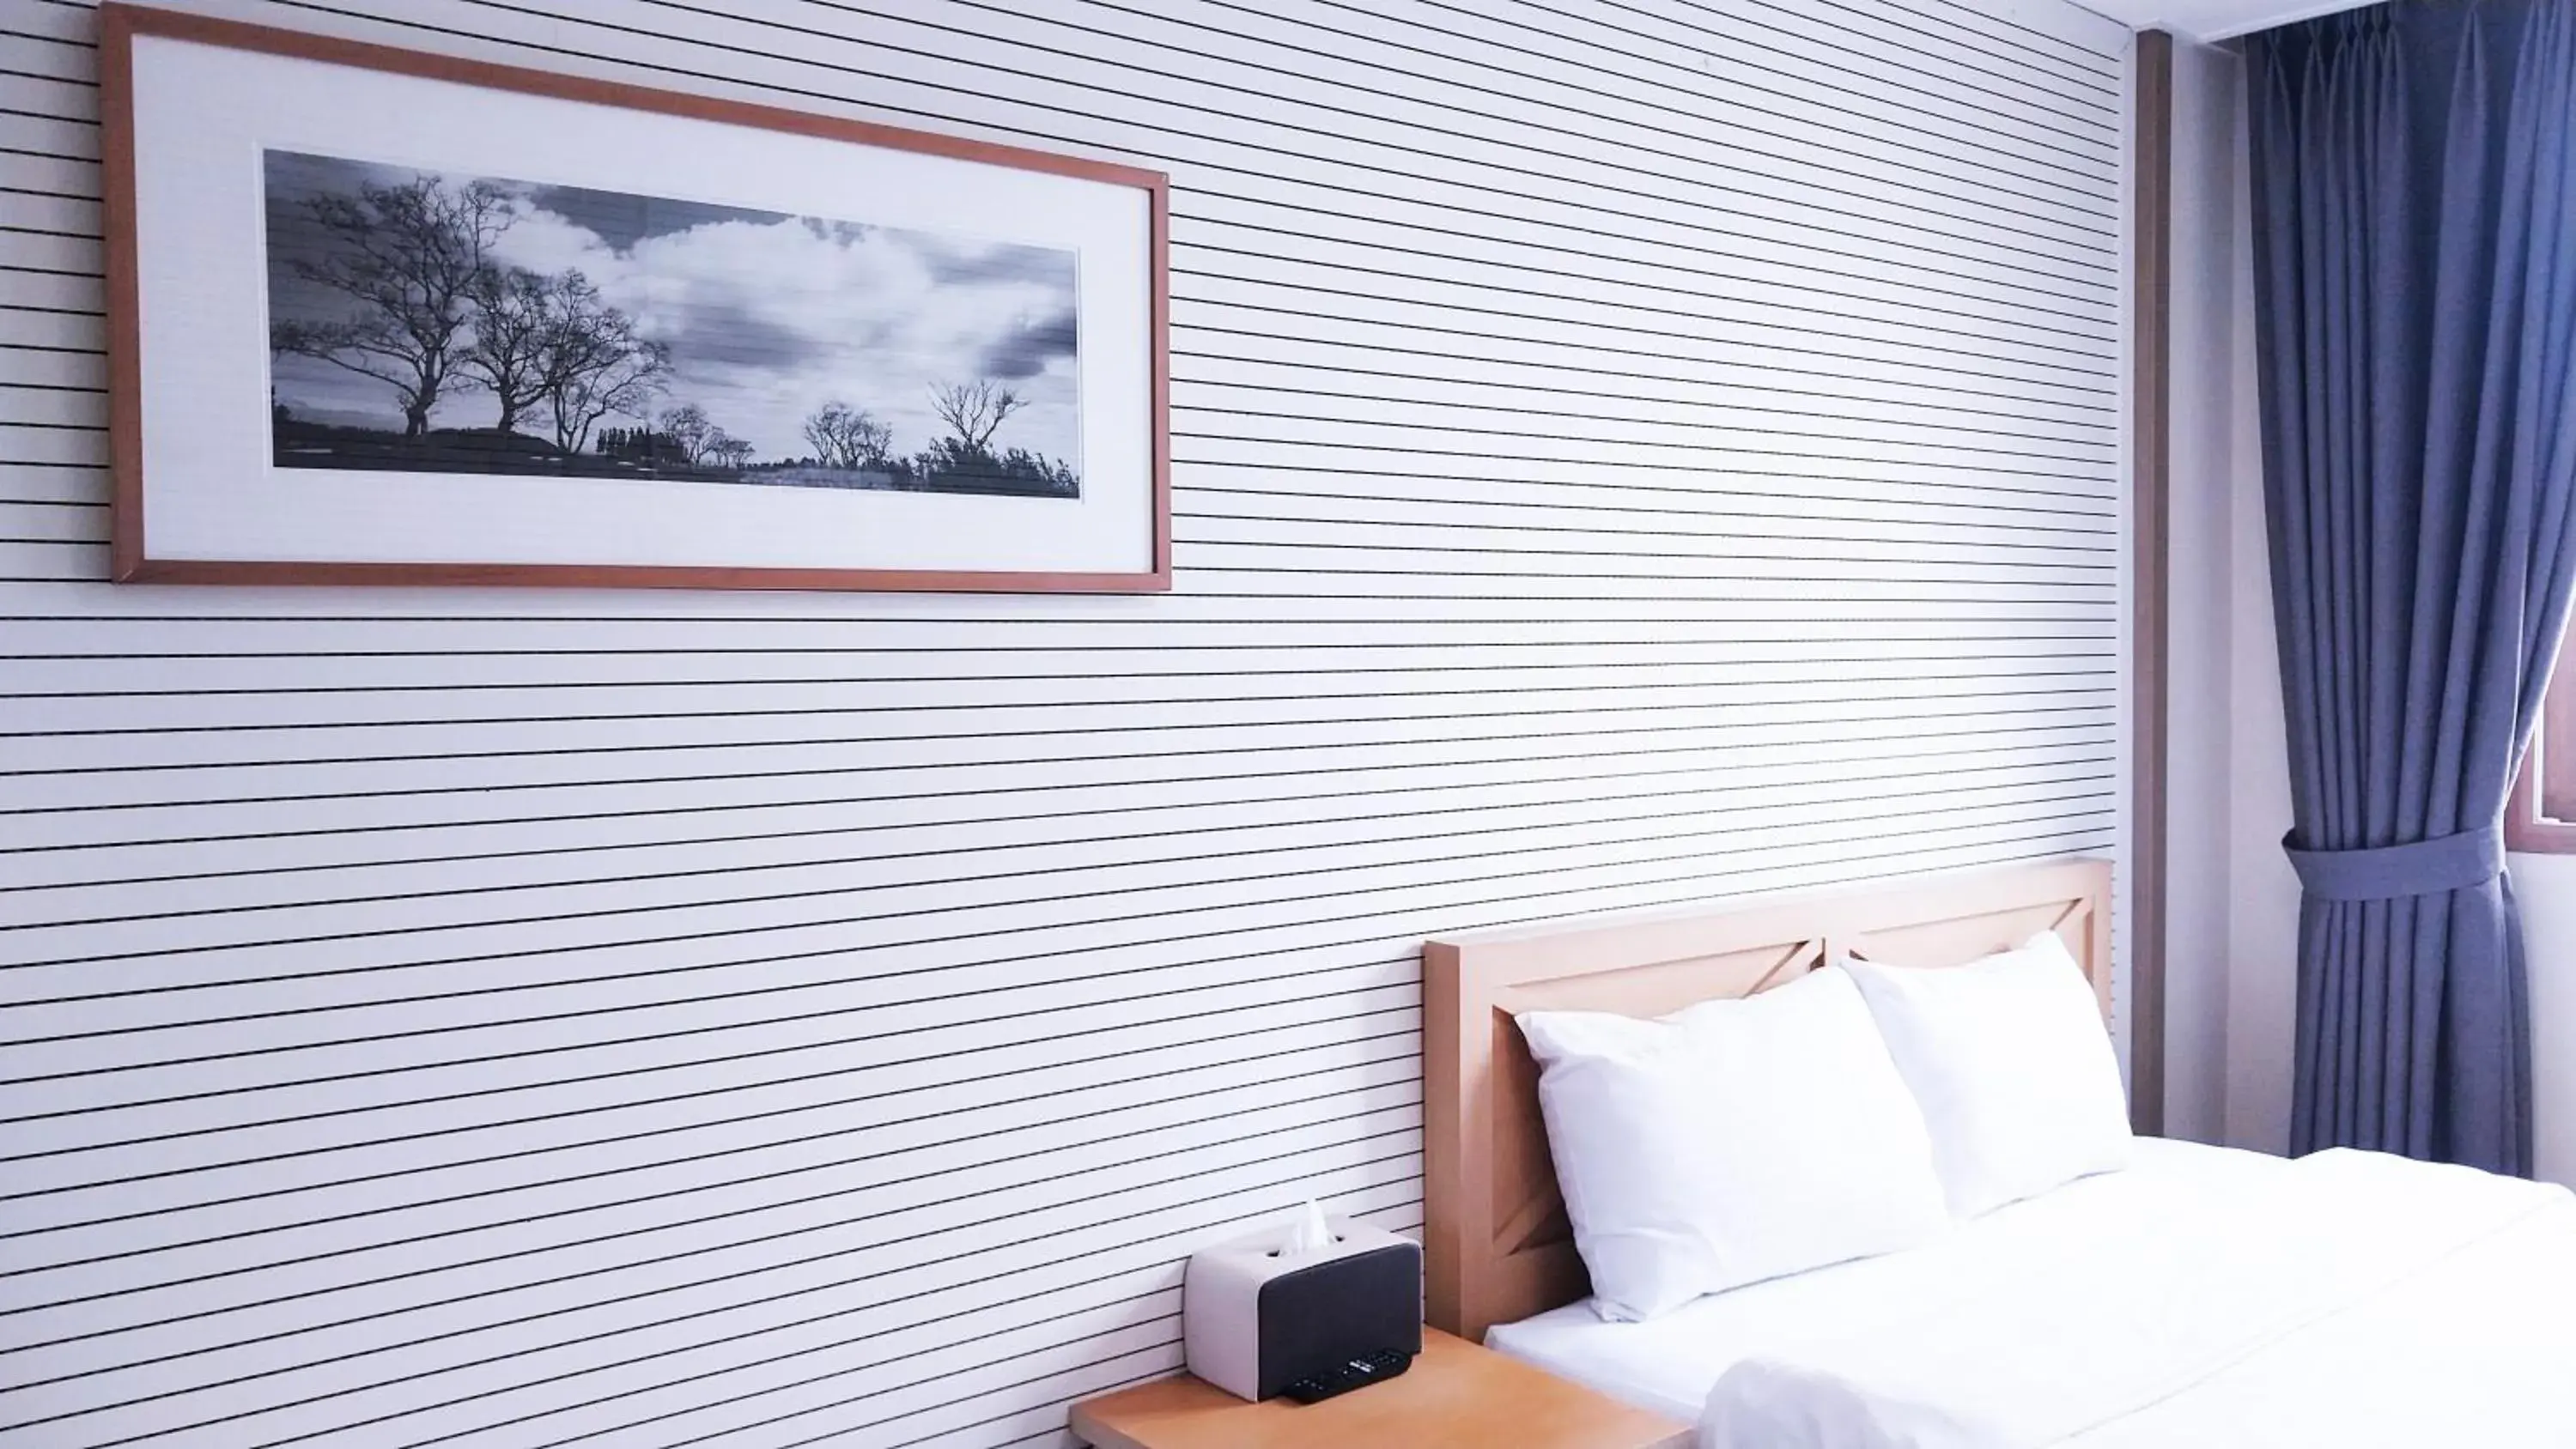 Bed in Golden Park Hotel Jeju